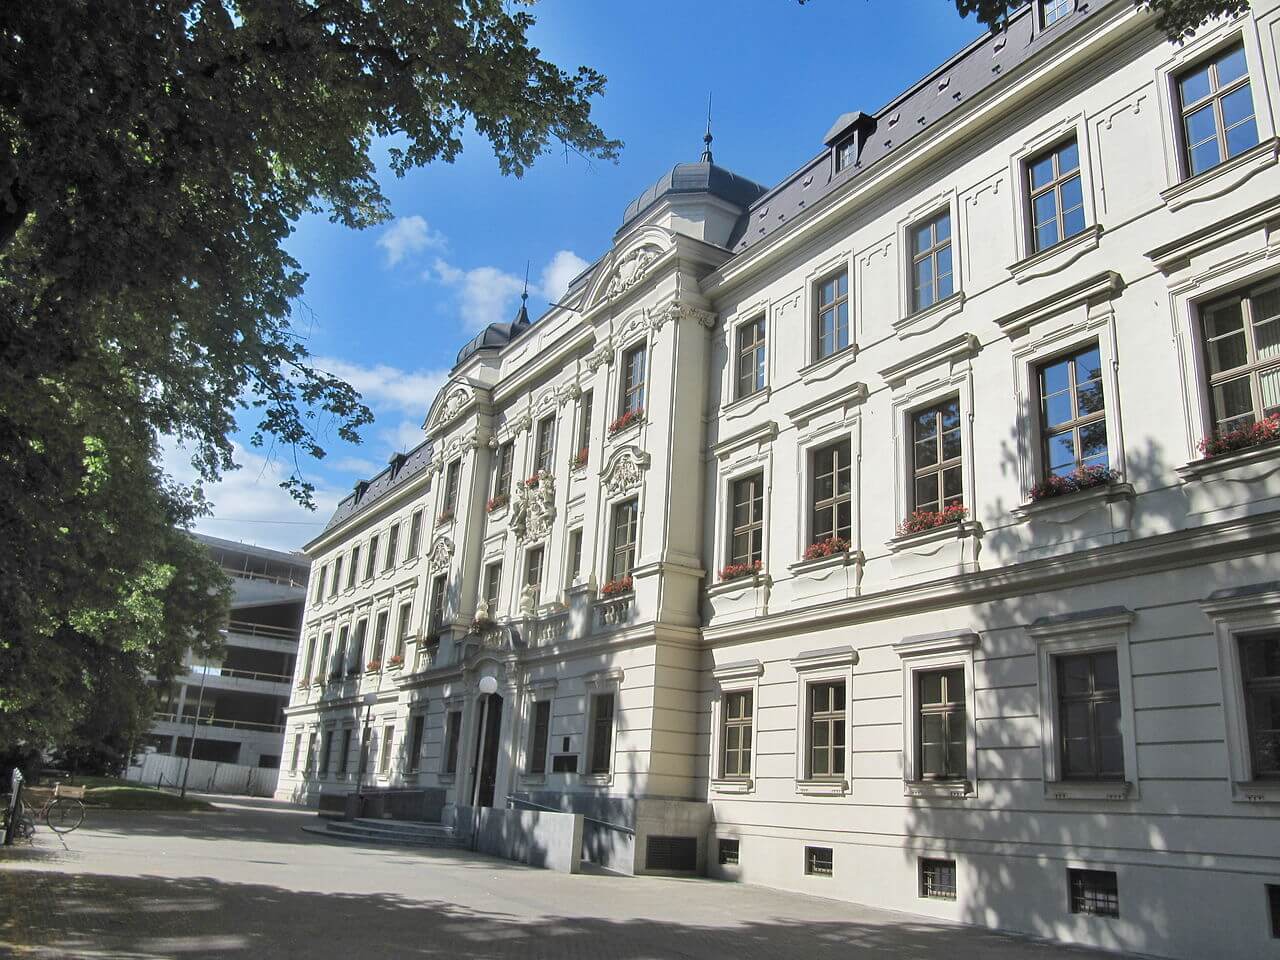 Khuôn viên của trường Đại học Kỹ thuật Brno